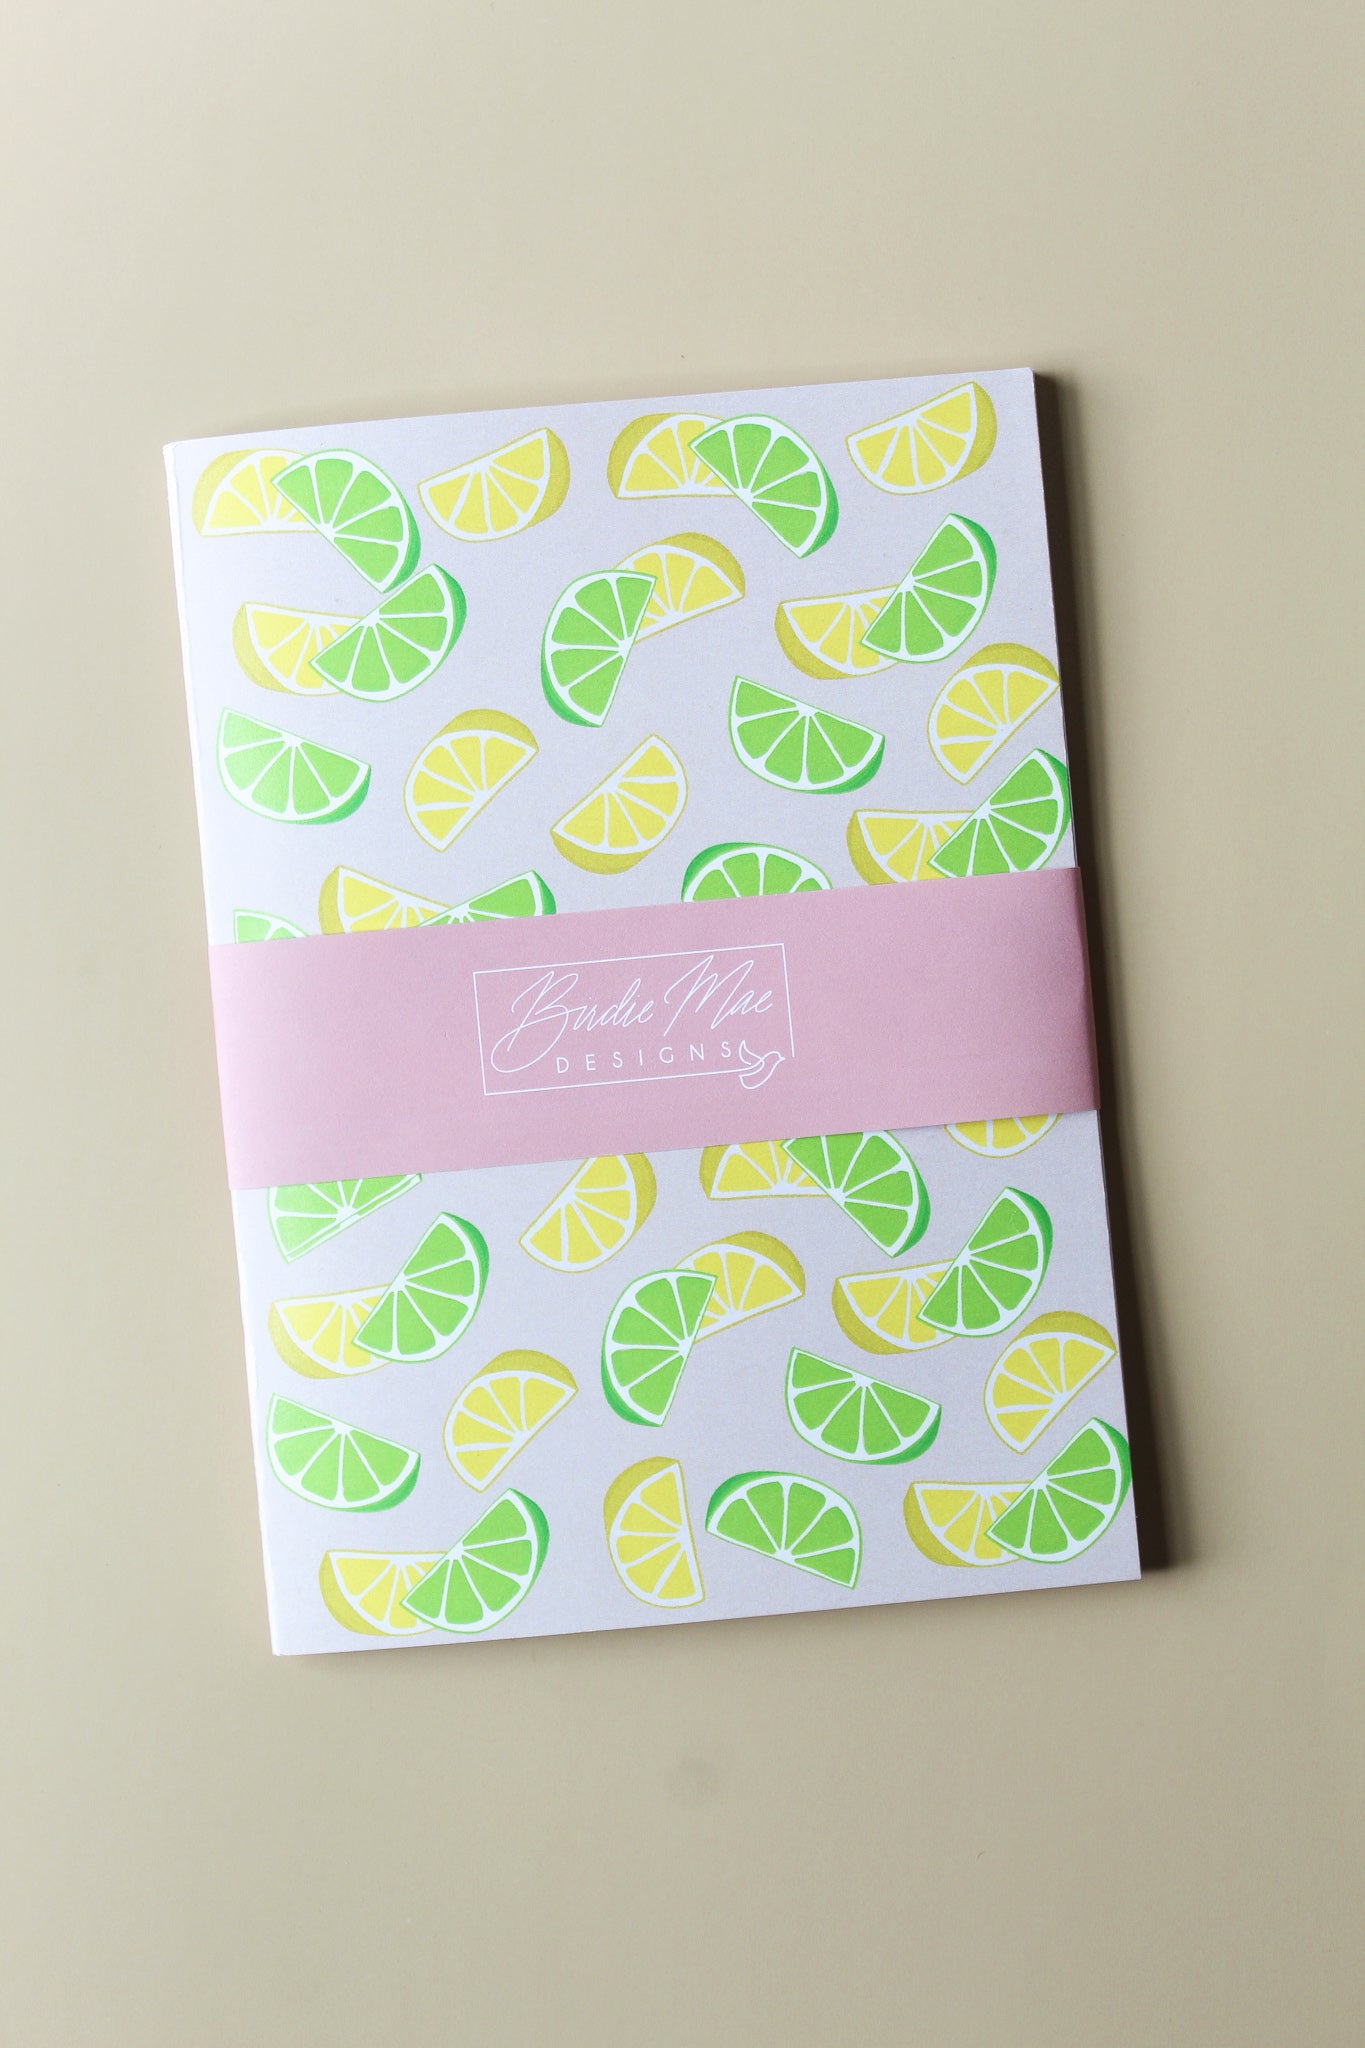 Lemon lime journal, summertime journal, prayer journal 